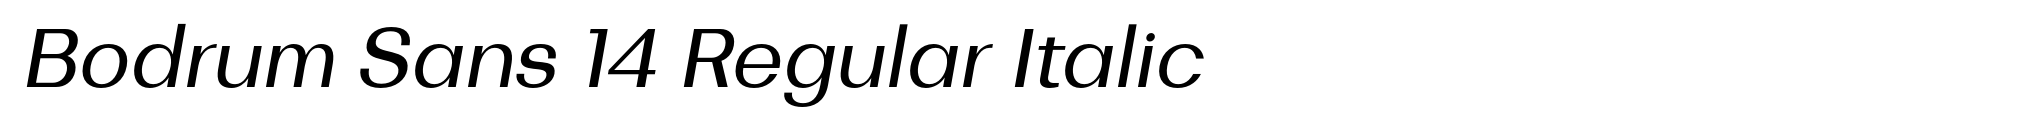 Bodrum Sans 14 Regular Italic image